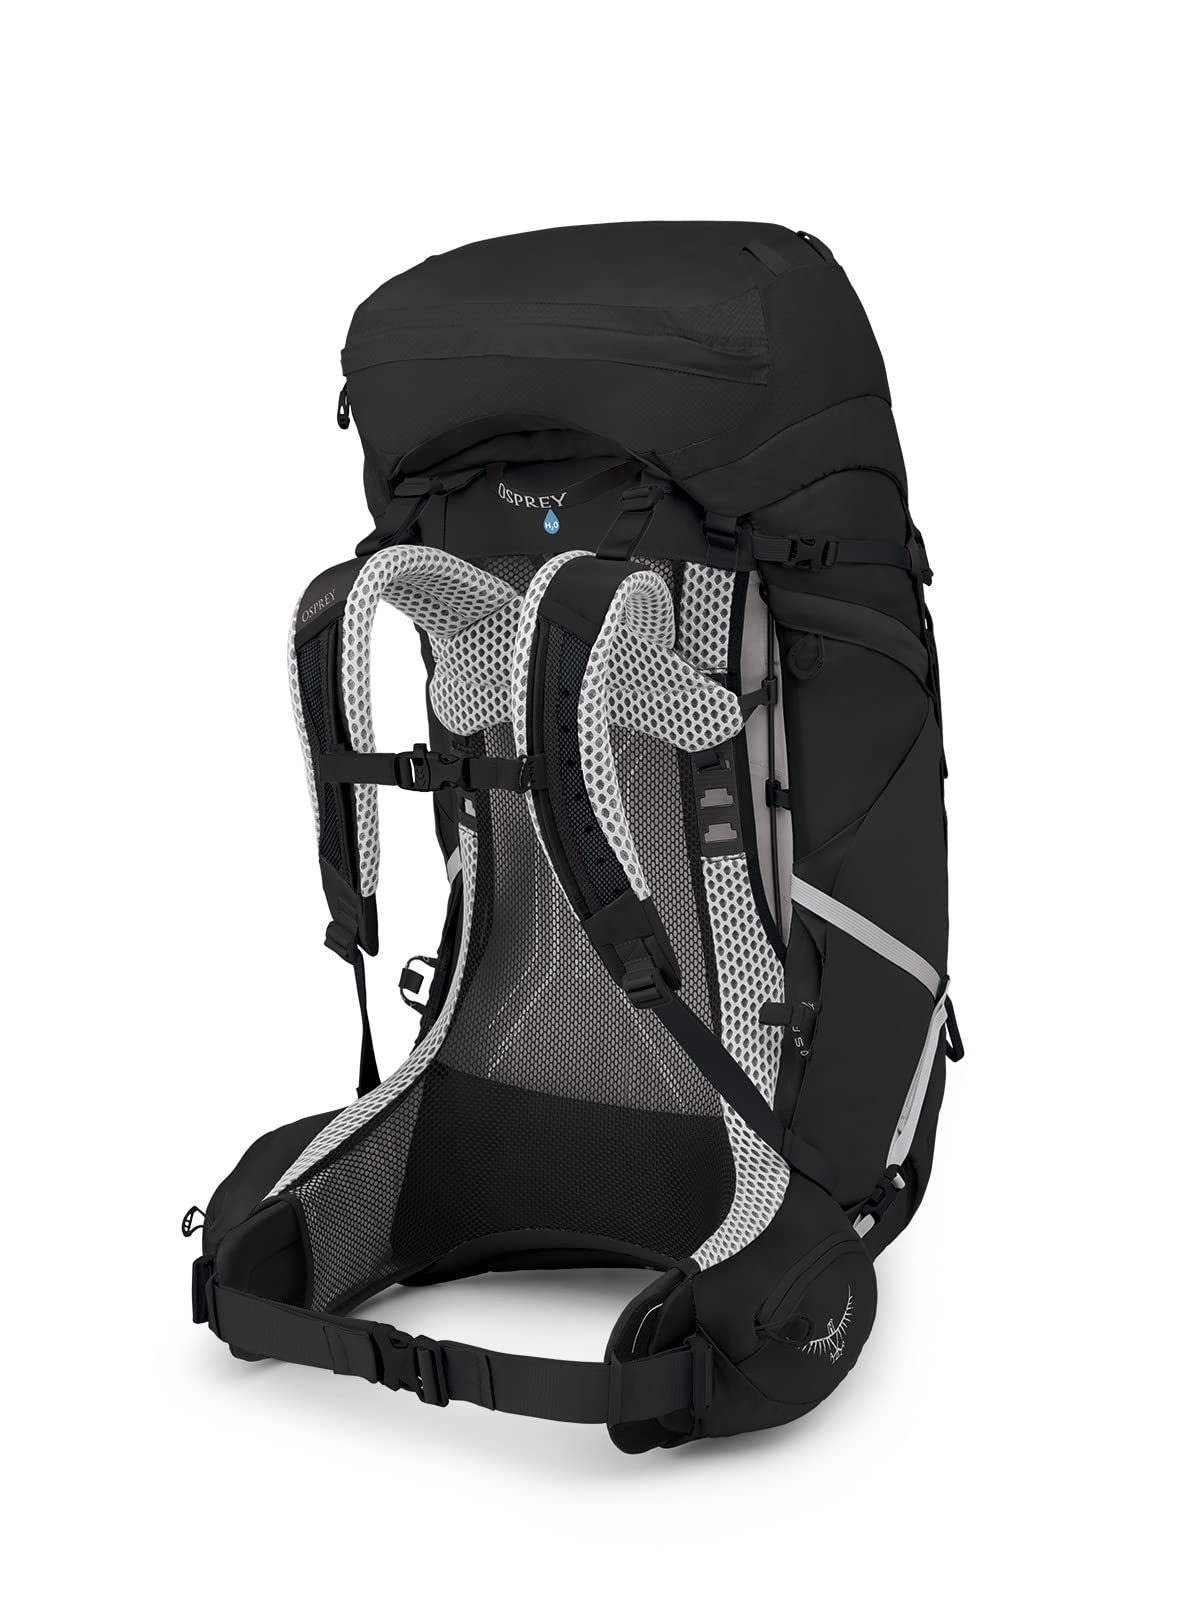 Osprey Atmos AG LT 65L Men's Hiking Backpack, Black, L/XL